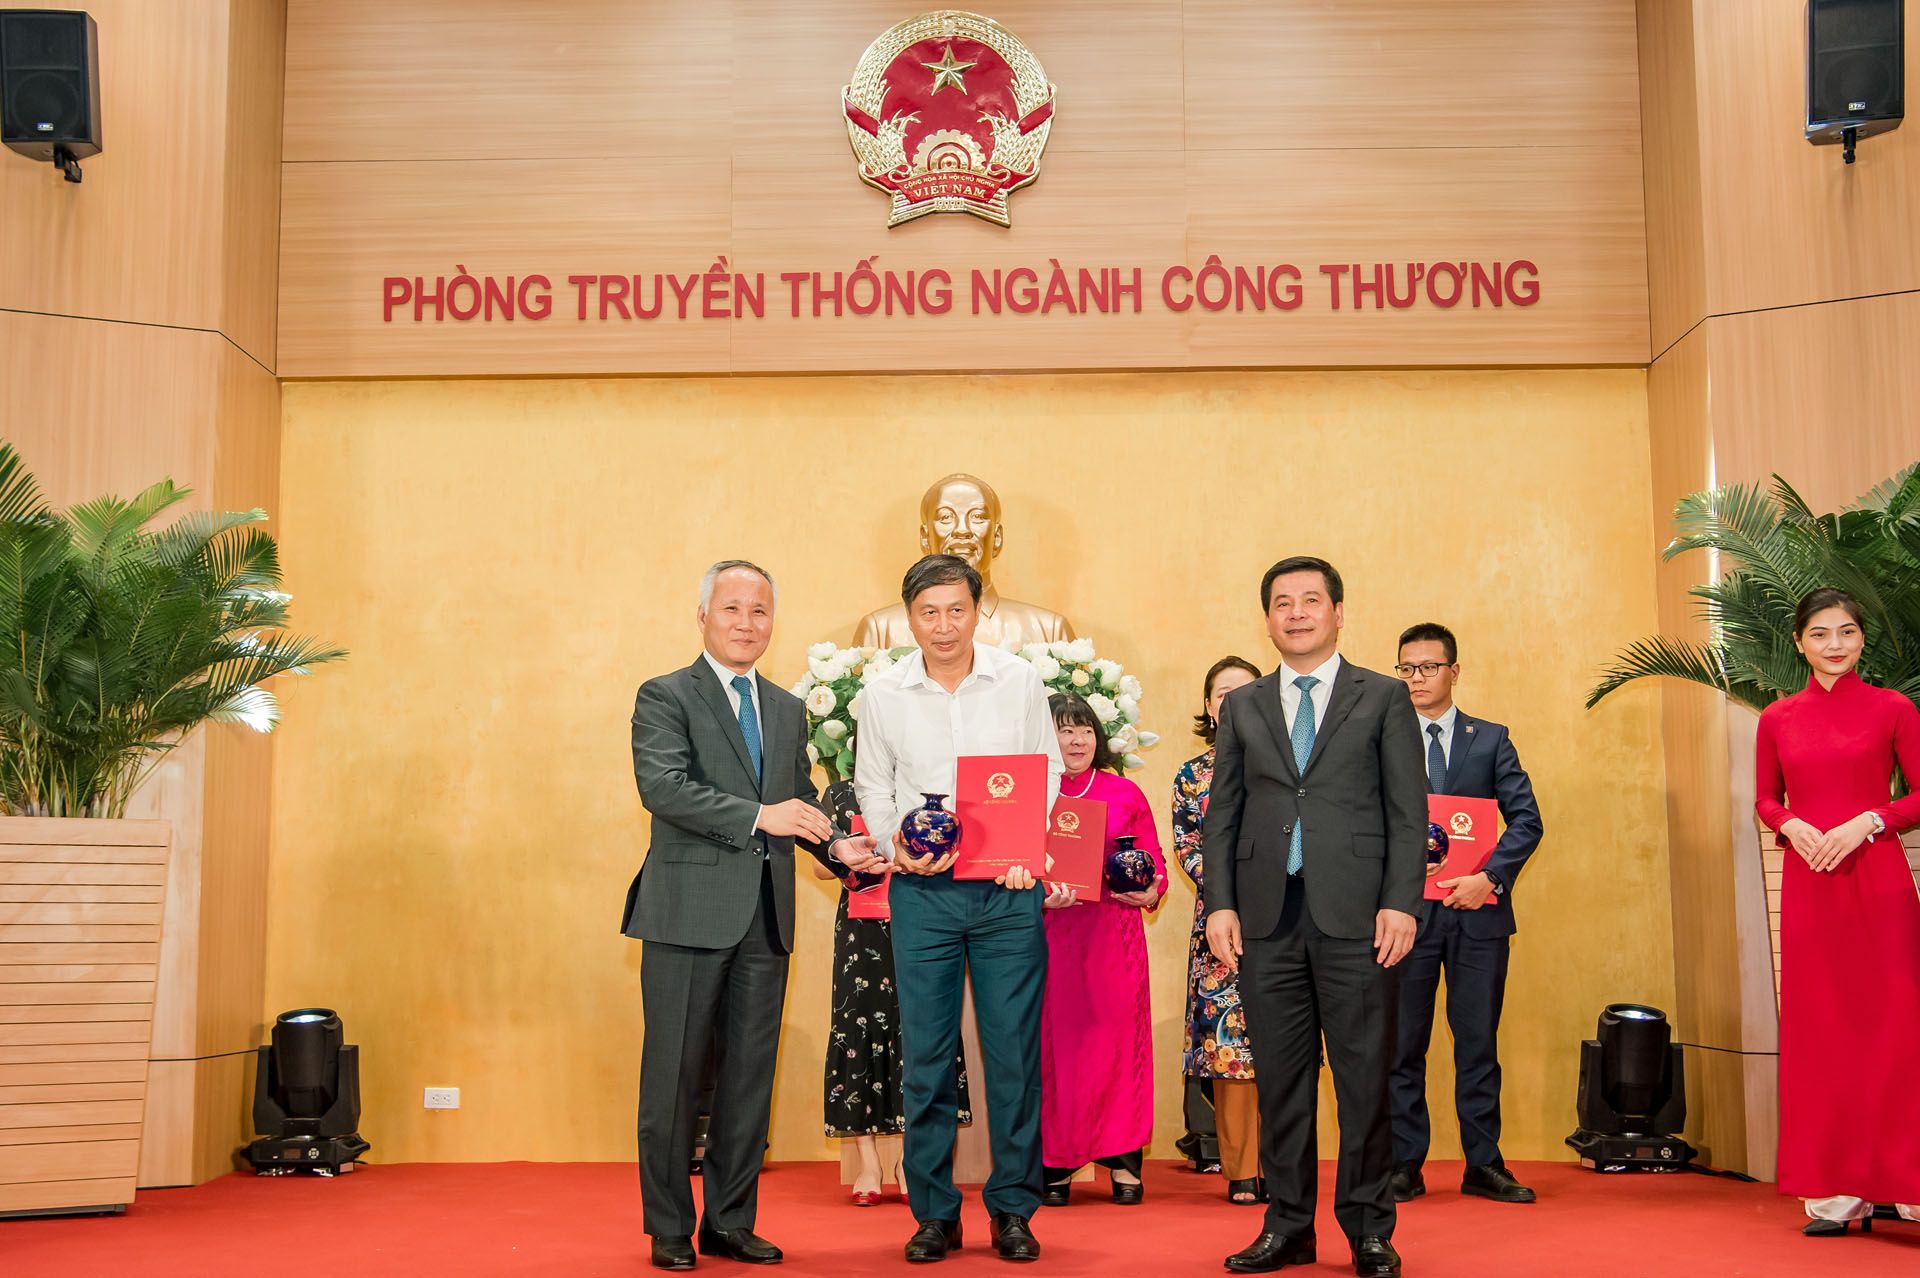 Bộ trưởng Nguyễn Hồng Diên và Thứ trưởng Trần Quốc Khánh trao thư cảm ơn cho các đại diện tập thể, cá nhân có nhiều đóng góp trong việc xây dựng Phòng Truyền thống ngành Công Thương